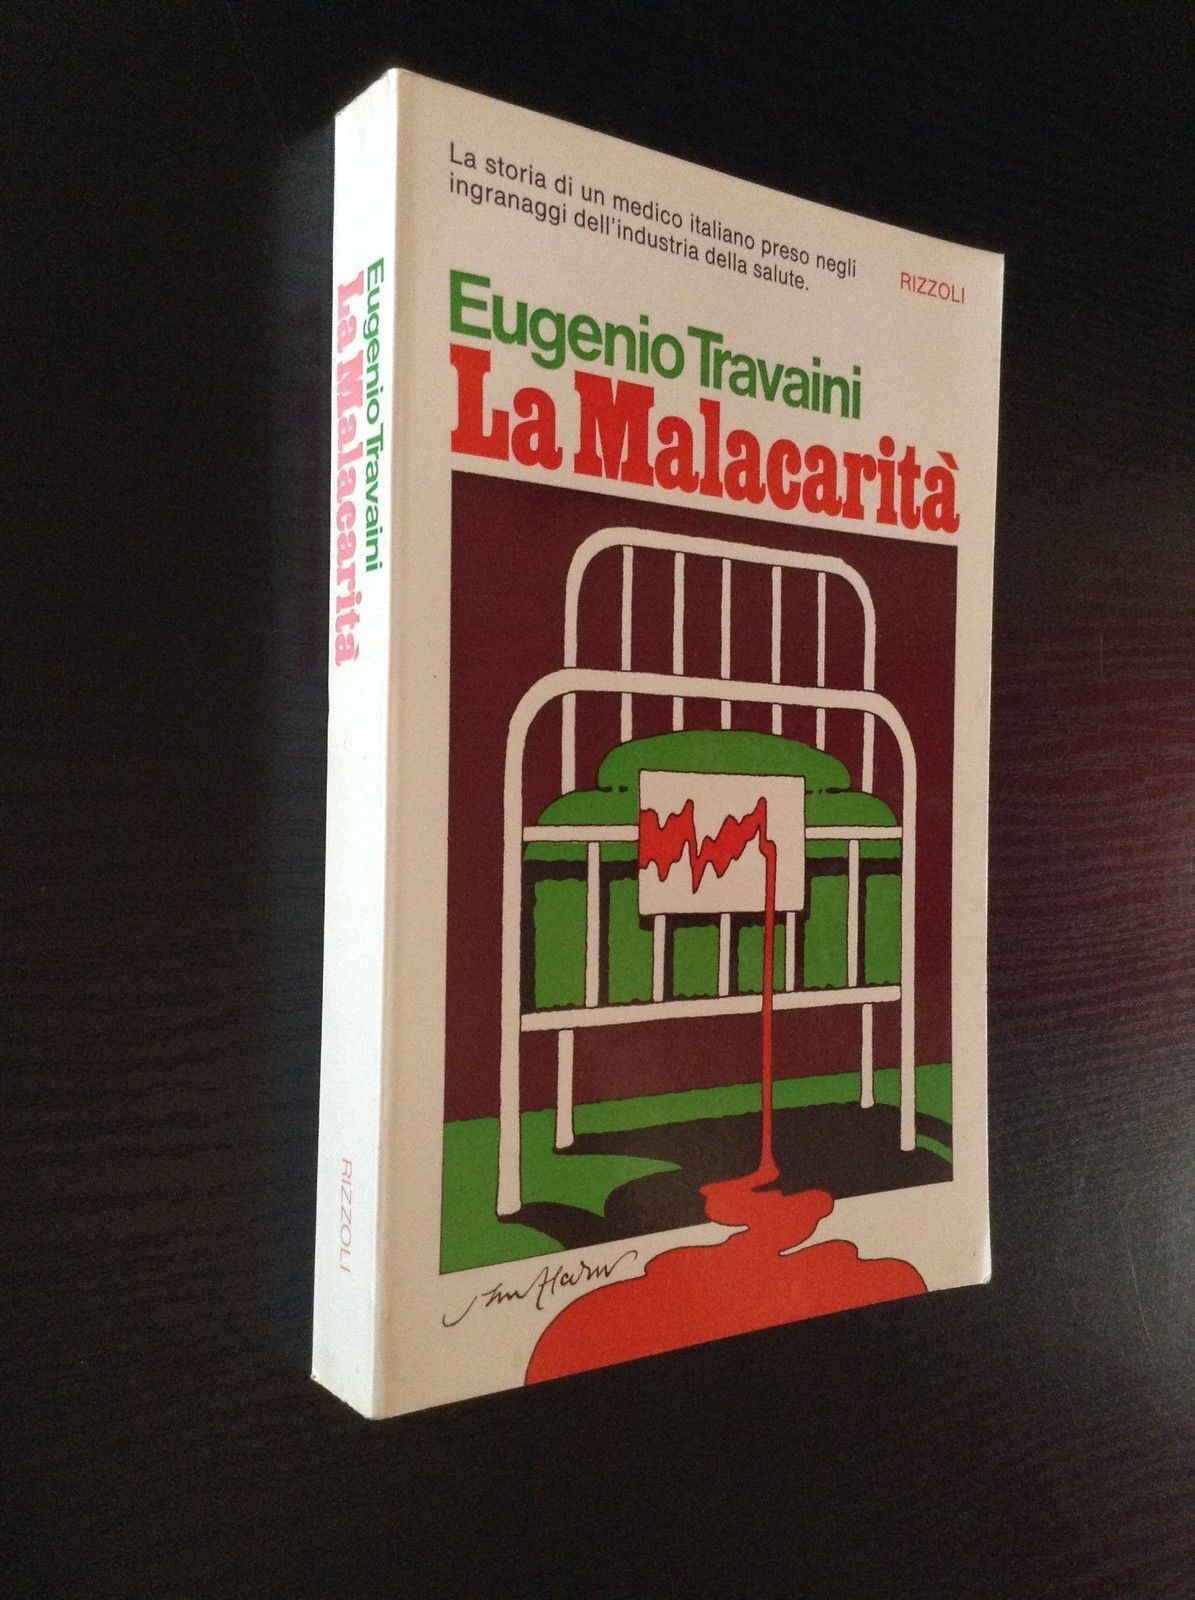 La Malacarit?,Eugenio Travaini, Rizzoli,1973